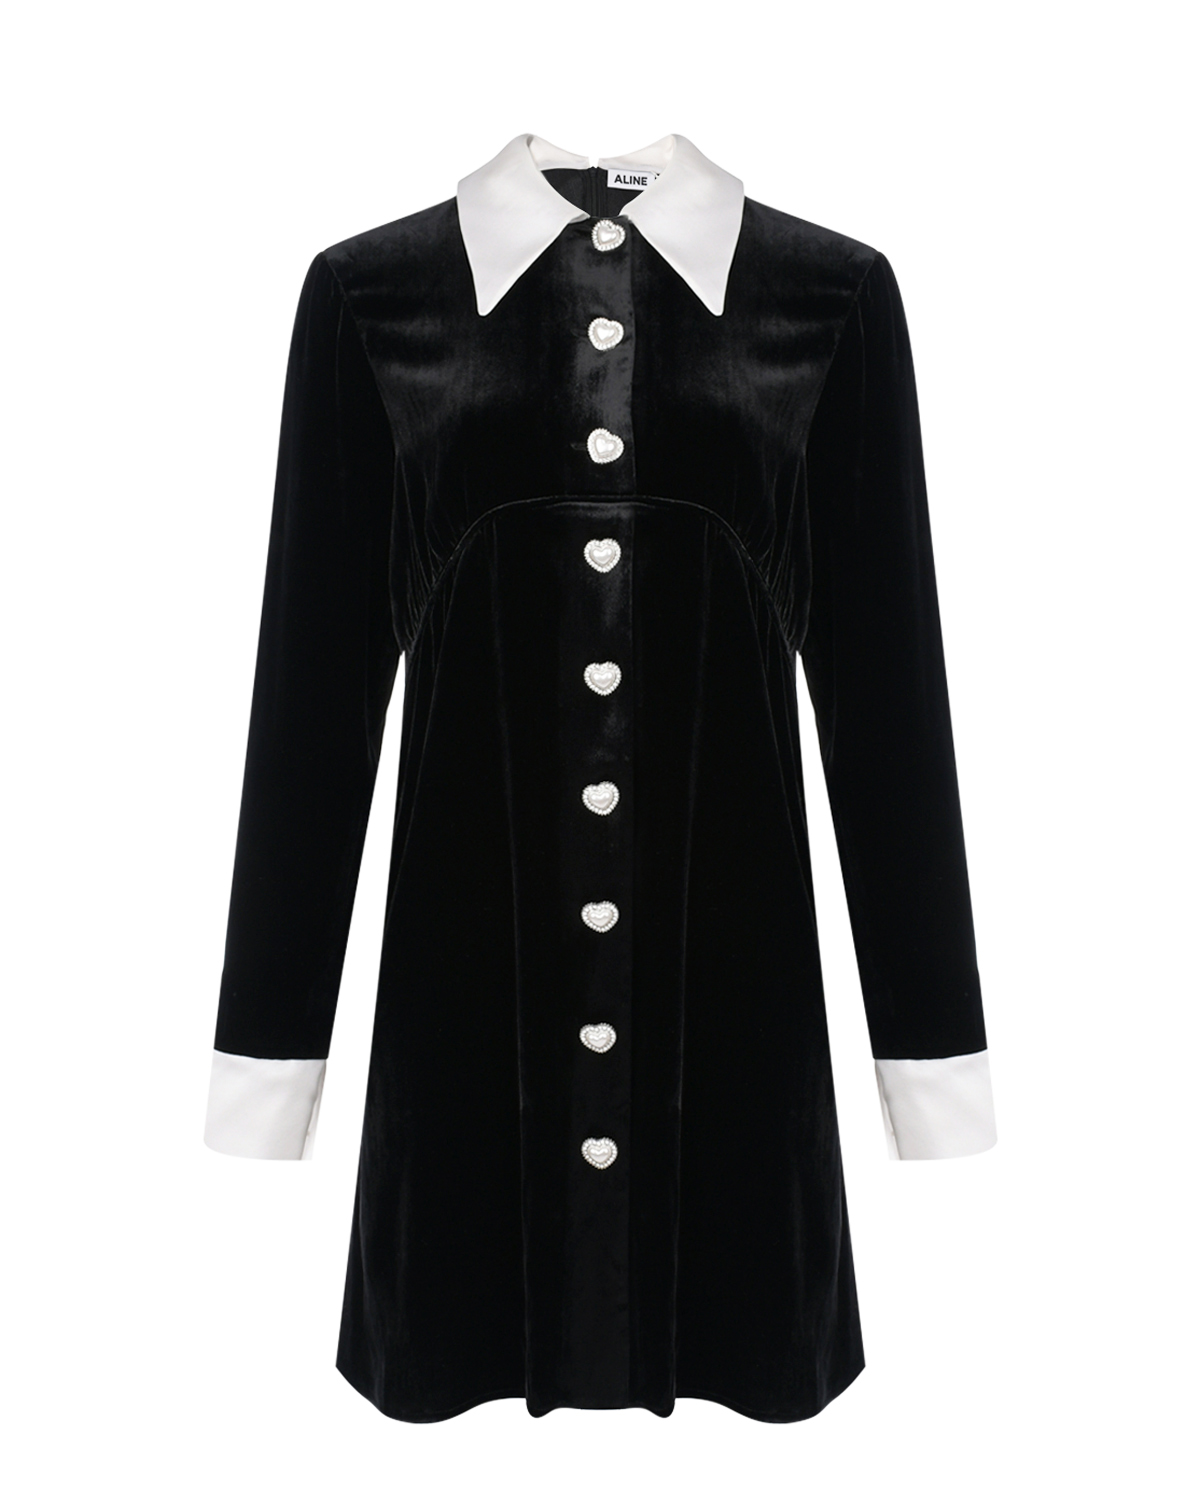 Черное бархатное платье с белым воротником и манжетами ALINE